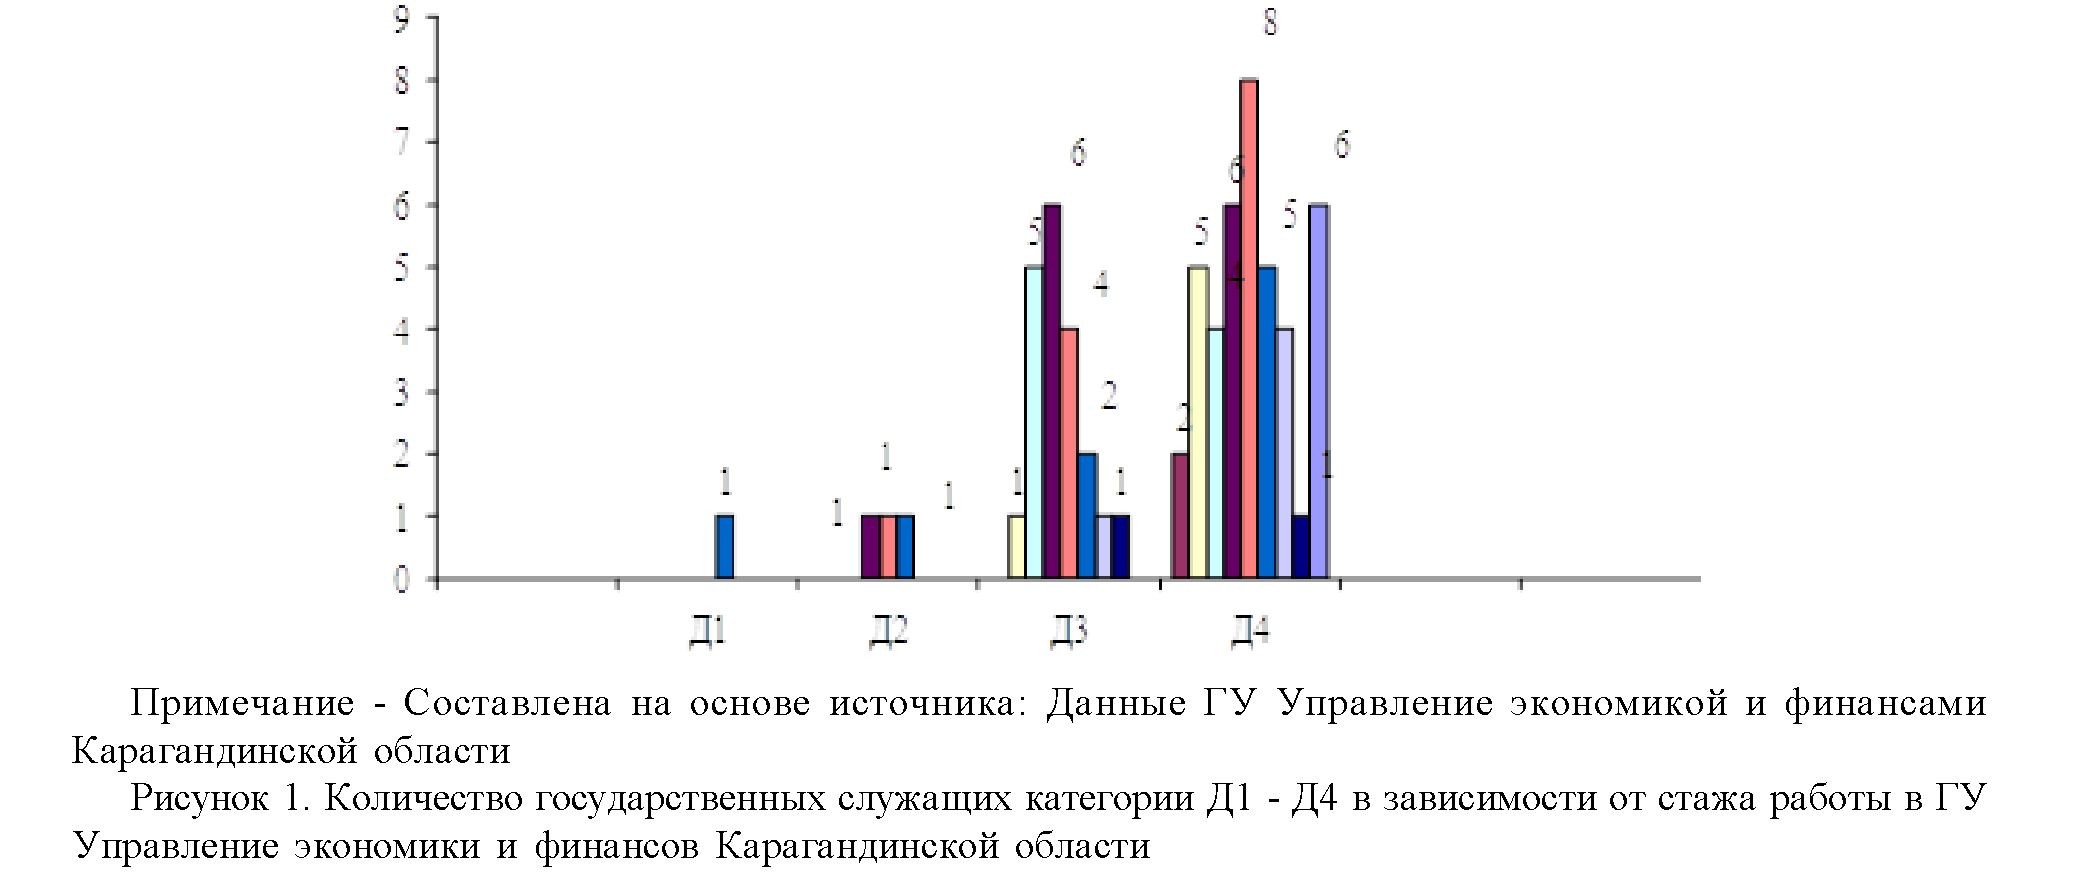 Анализ системы оплаты труда государственных служащих в республике Казахстан